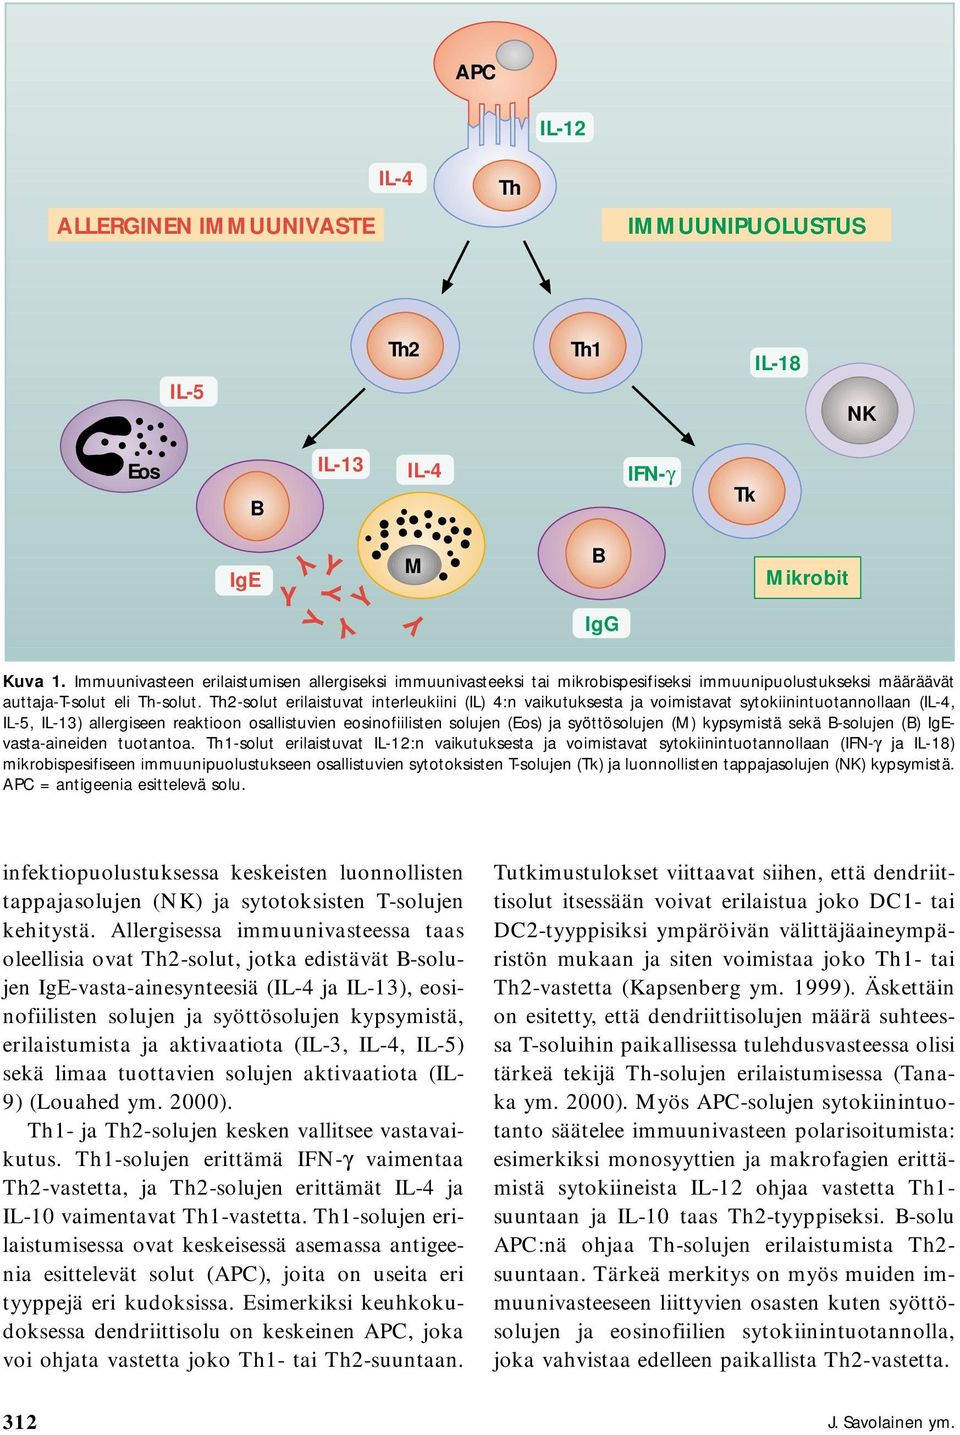 -solut erilaistuvat interleukiini (IL) 4:n vaikutuksesta ja voimistavat sytokiinintuotannollaan (,, ) allergiseen reaktioon osallistuvien eosinofiilisten solujen (Eos) ja syöttösolujen (M) kypsymistä